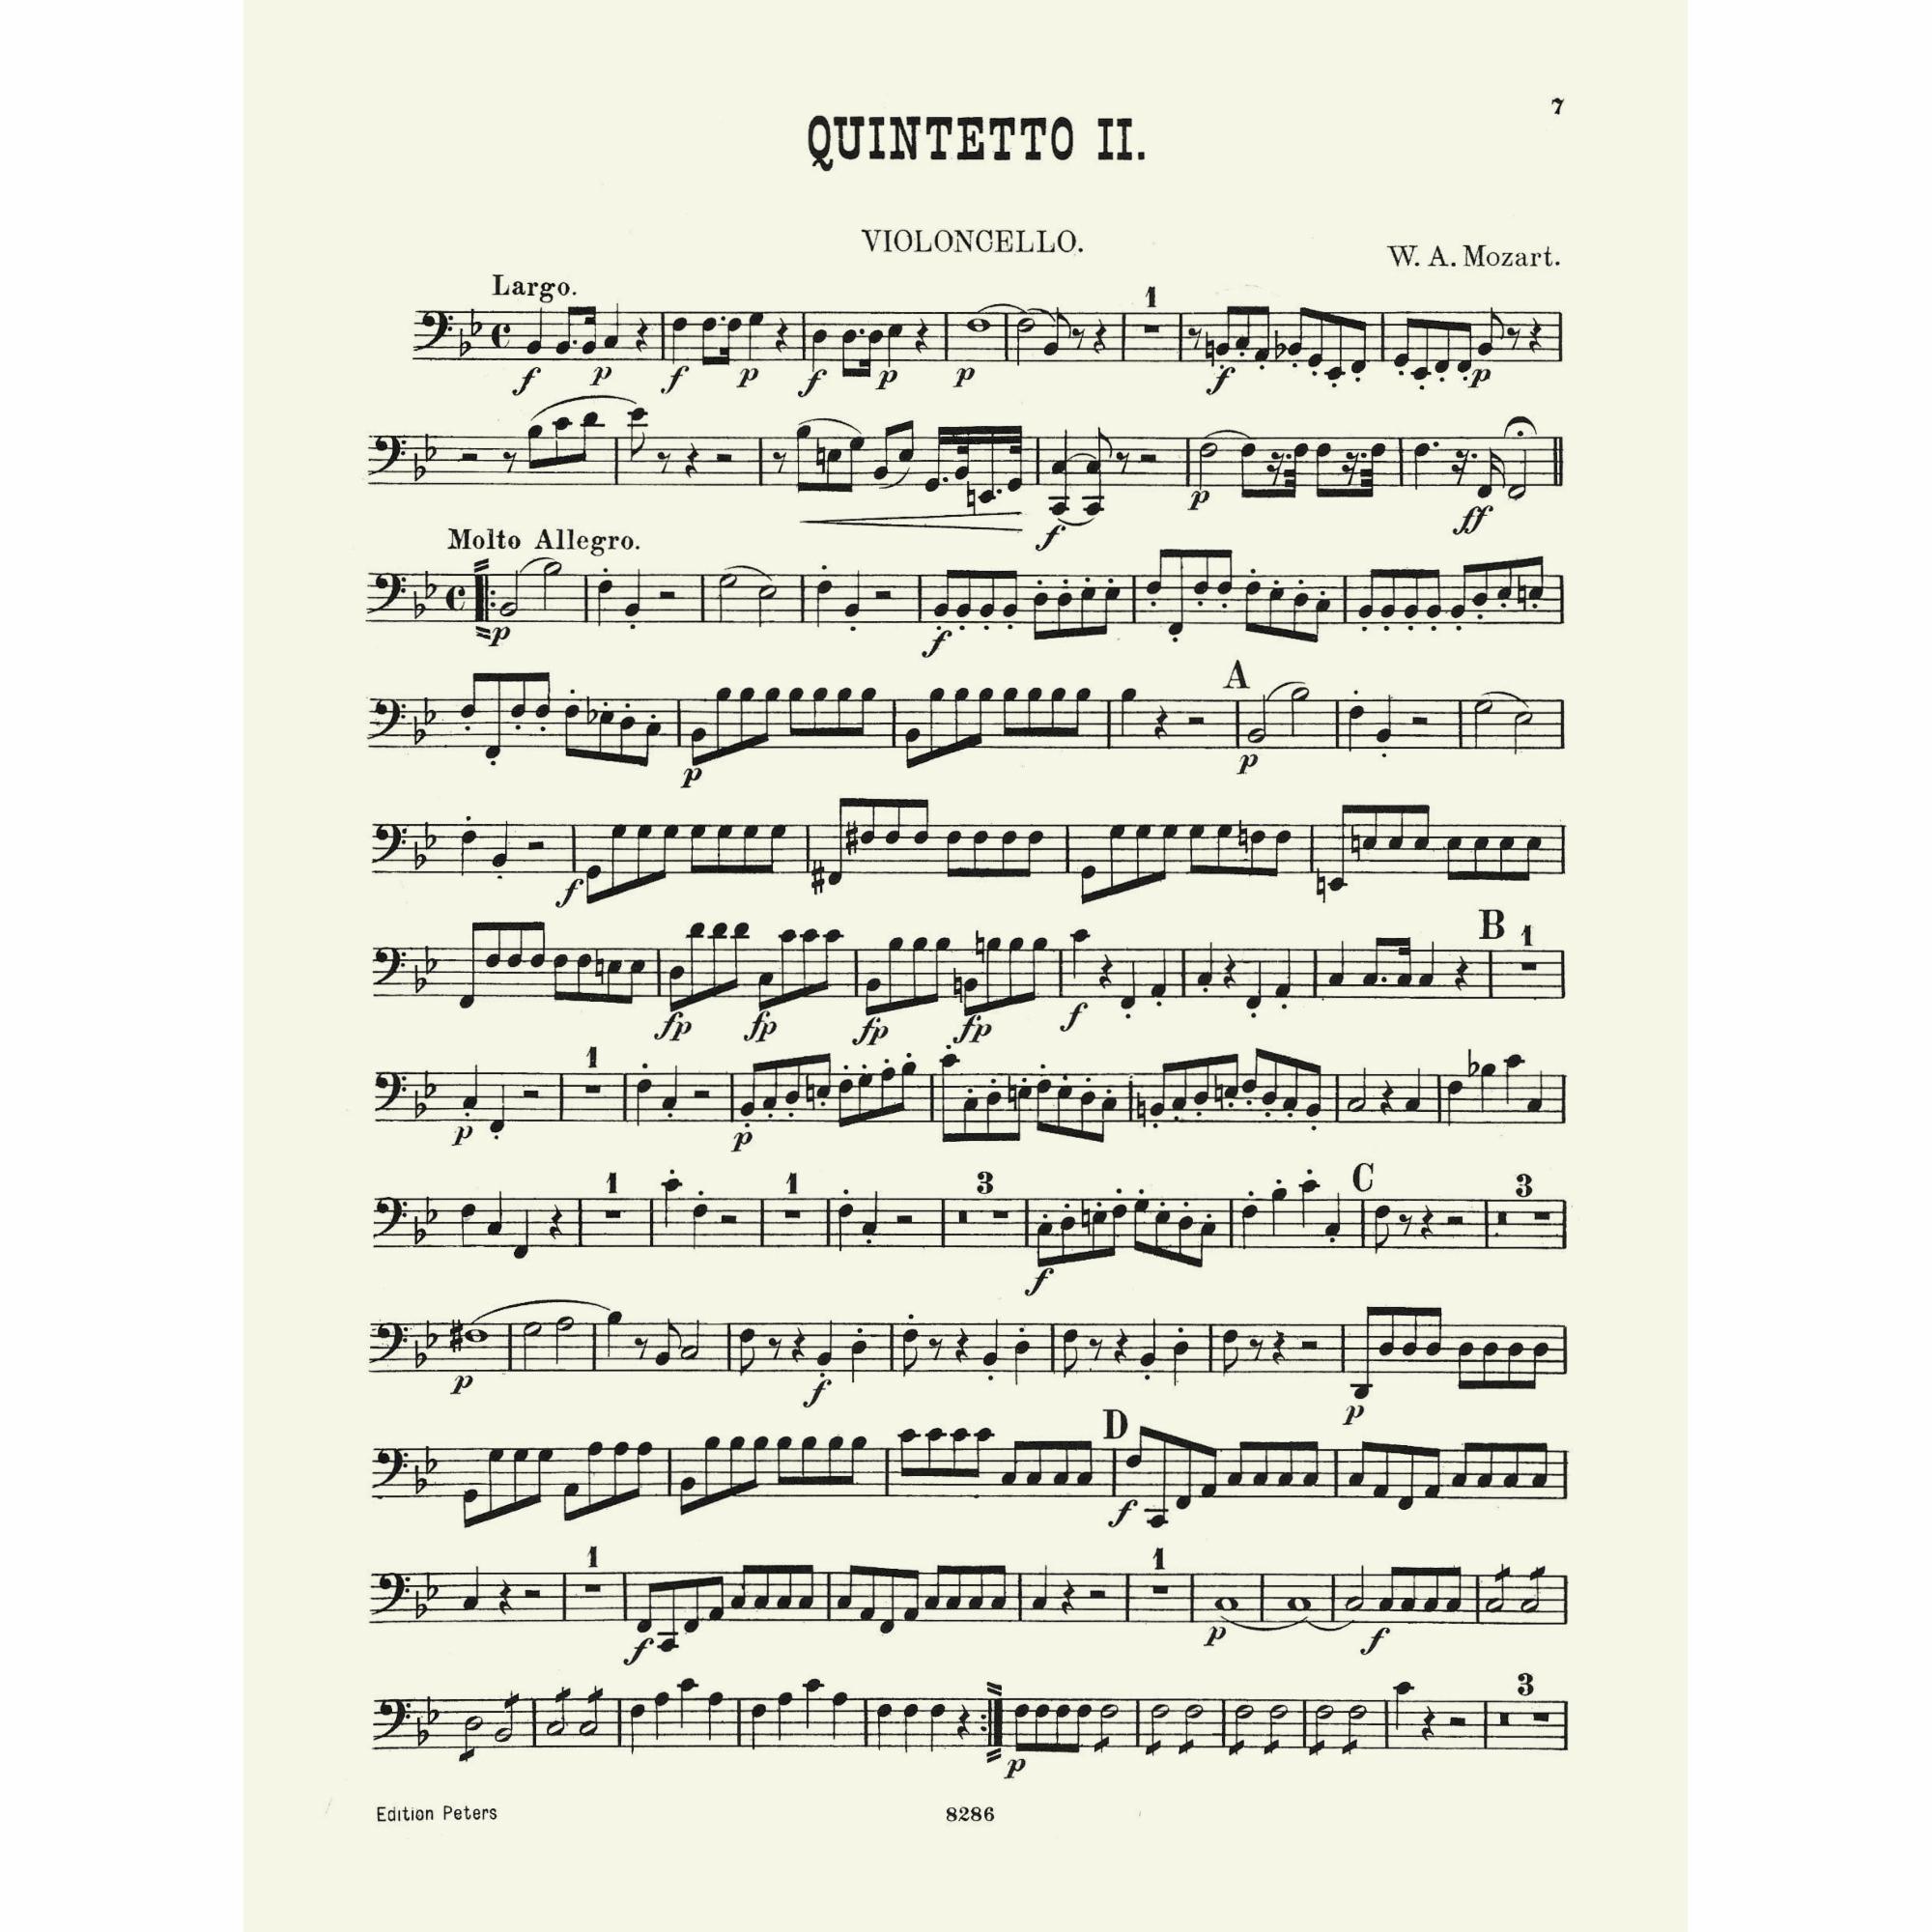 Sample: Vol. II Cello (Pg. 7)